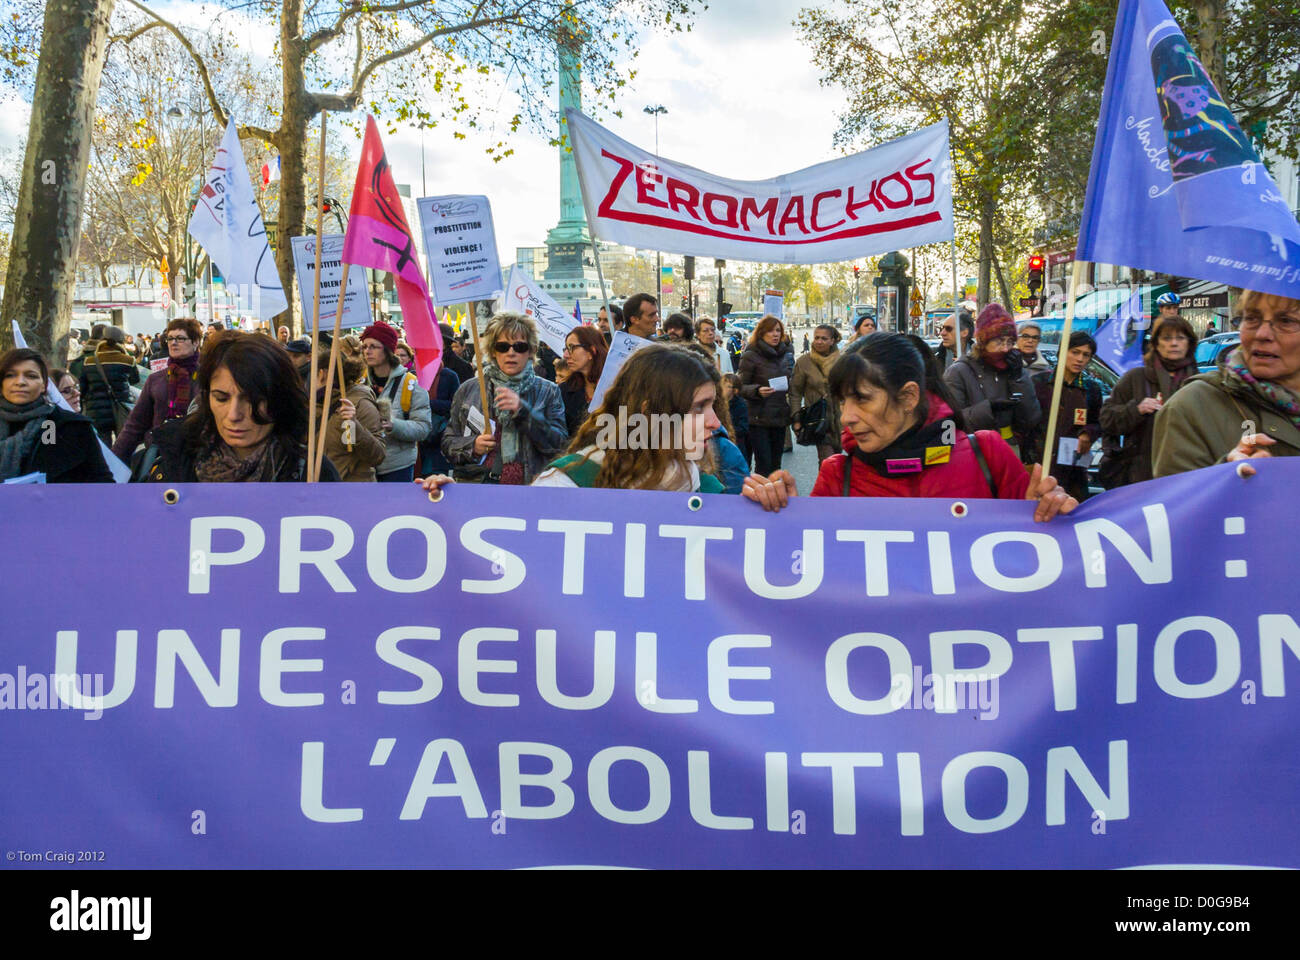 Paris, France, manifestation contre la violence envers les femmes, groupes contre la prostitution légale, Journée internationale des droits de la femme, bannière de protestation du 8 mars, rue de la marche populaire, abolitionnistes, activisme des femmes Banque D'Images